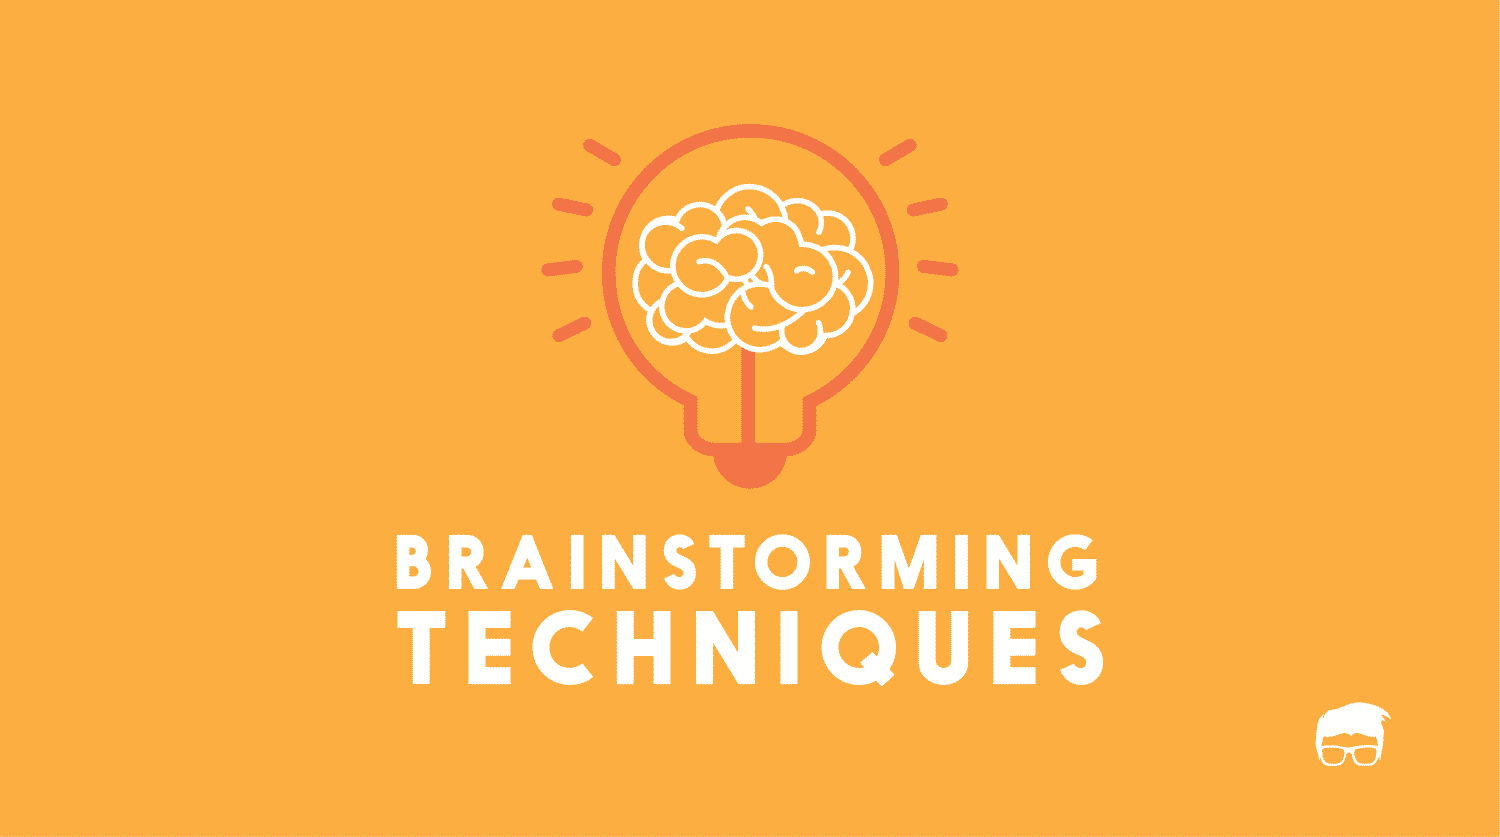 5 Simple & Effective Brainstorming Techniques